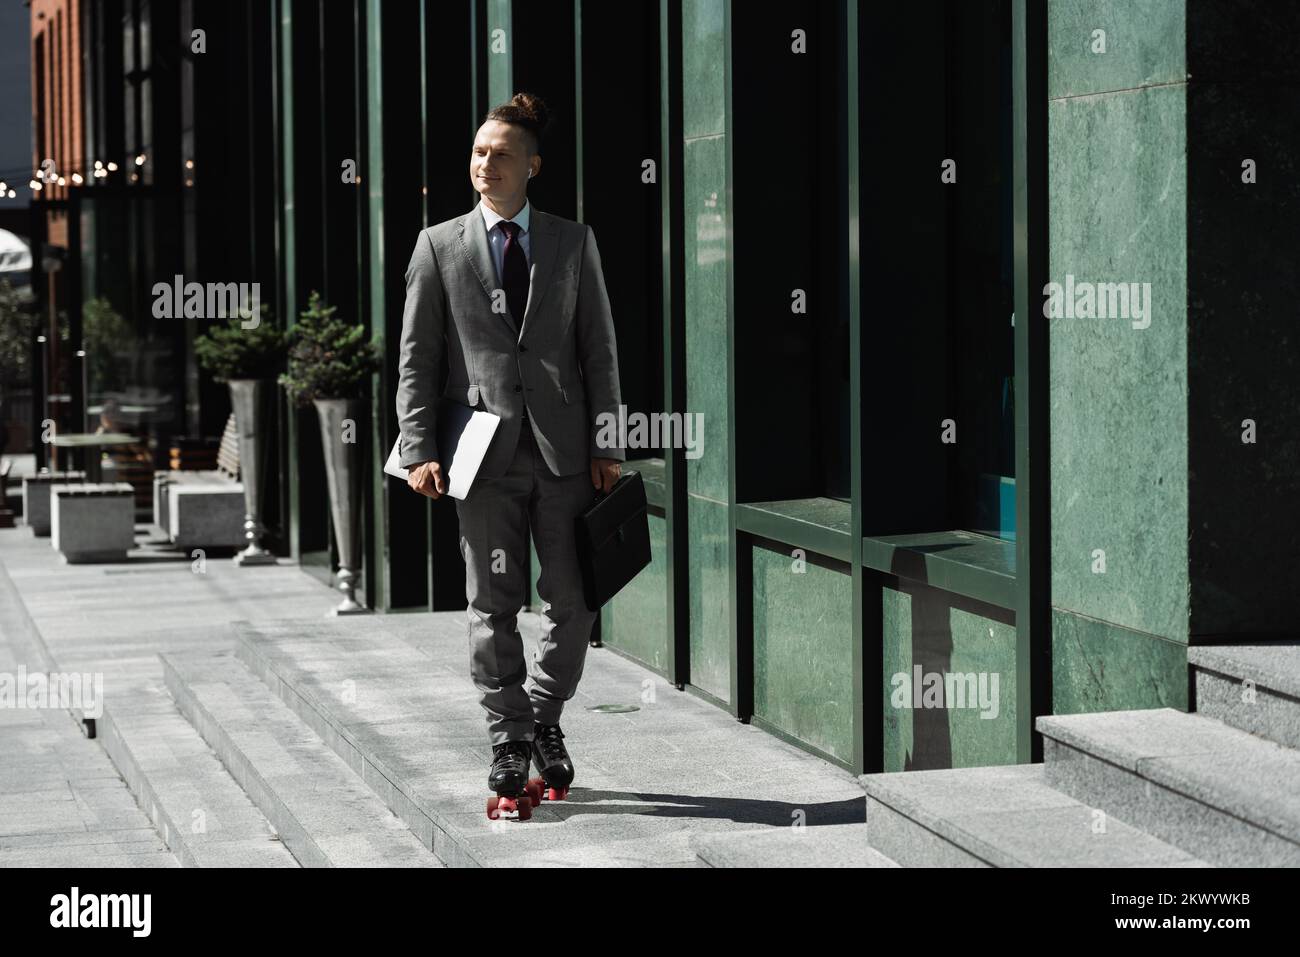 Glücklicher Mann in Business-Anzug und Rollschuhen mit Laptop und Aktentasche, während er auf der Straße der Stadt Schlittschuh läuft, Stockbild Stockfoto